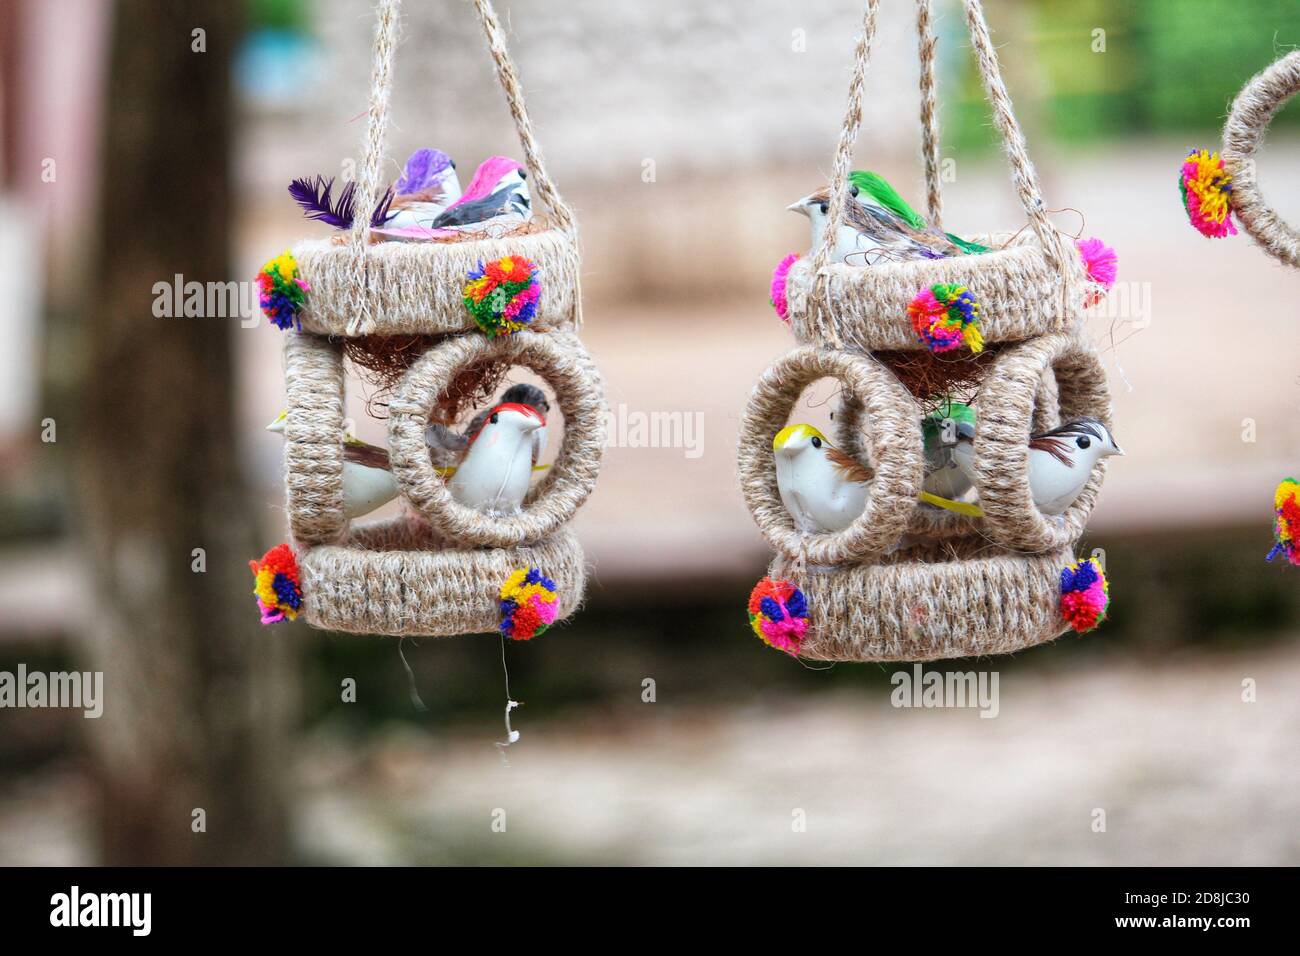 beautiful handmade craft of chhatisgarh bastar district chitrakoot waterfall Stock Photo